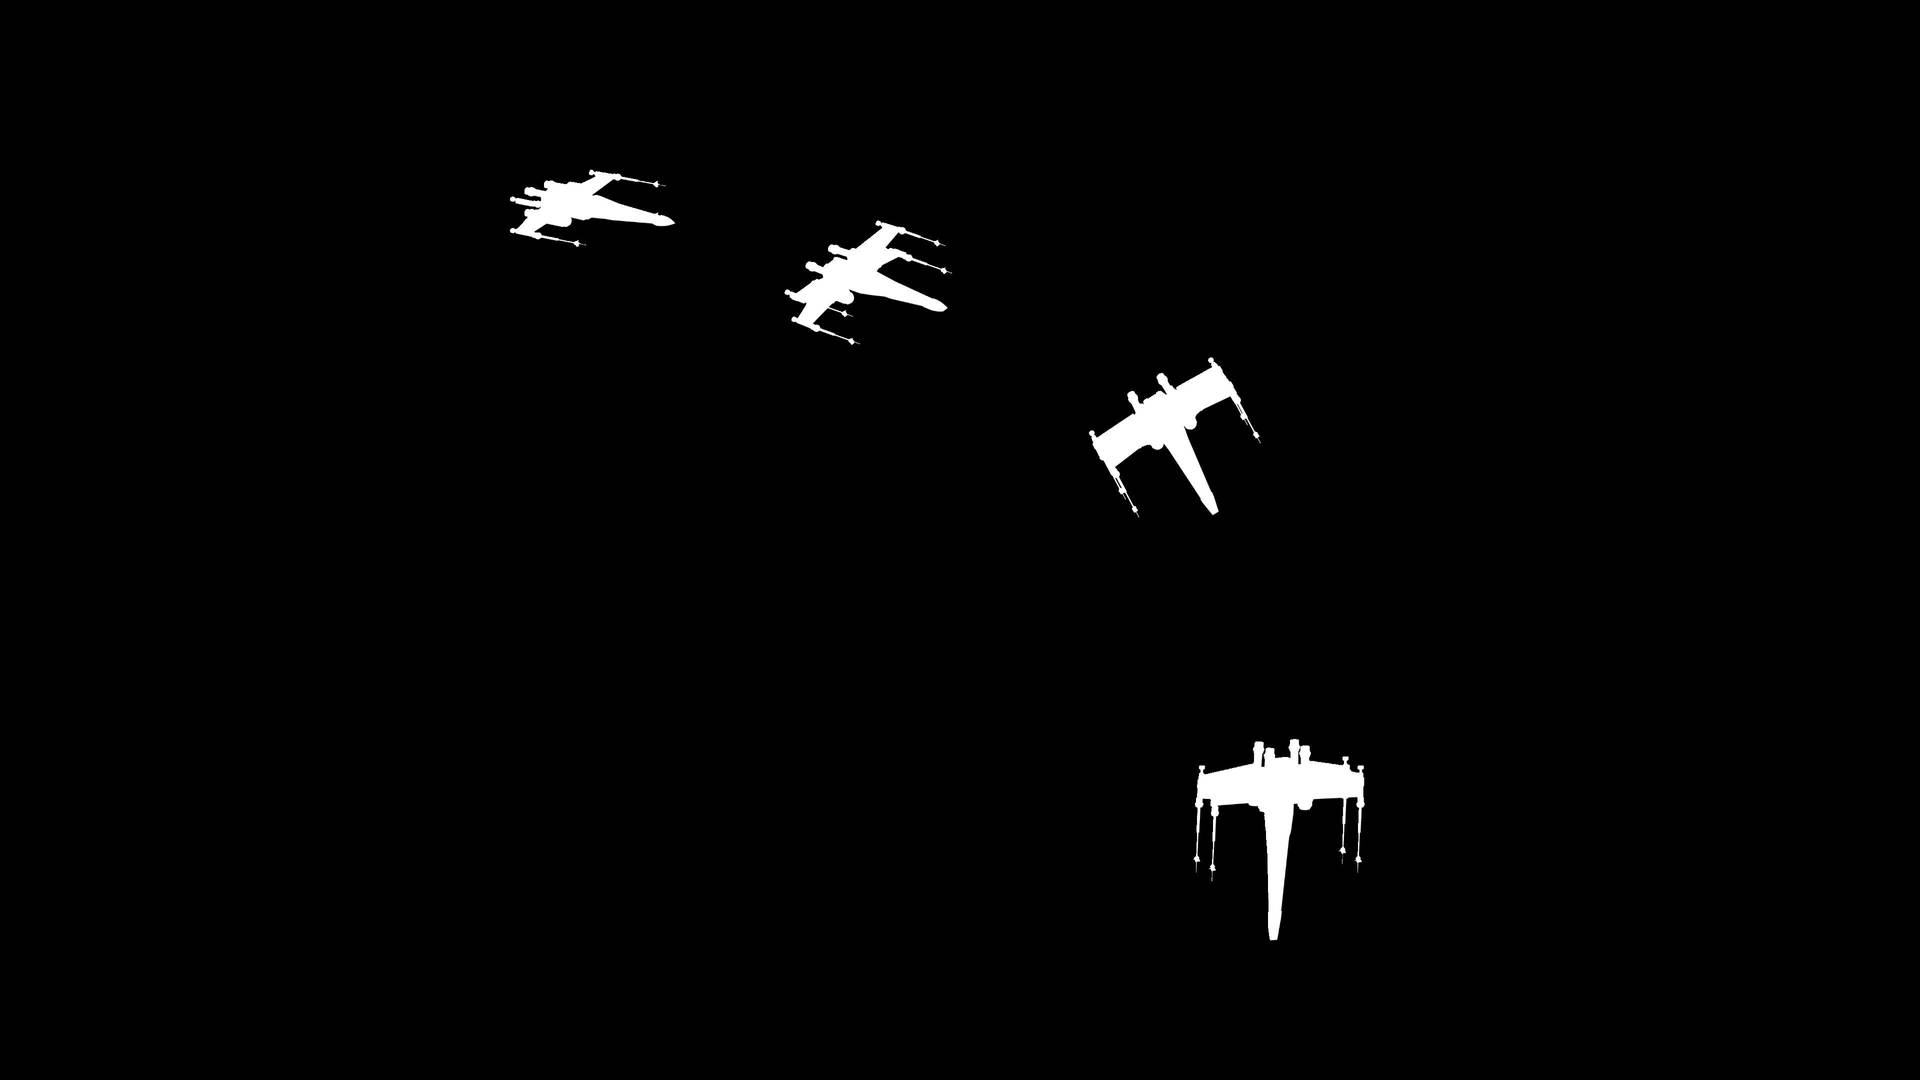 Dark Minimalist X-wings